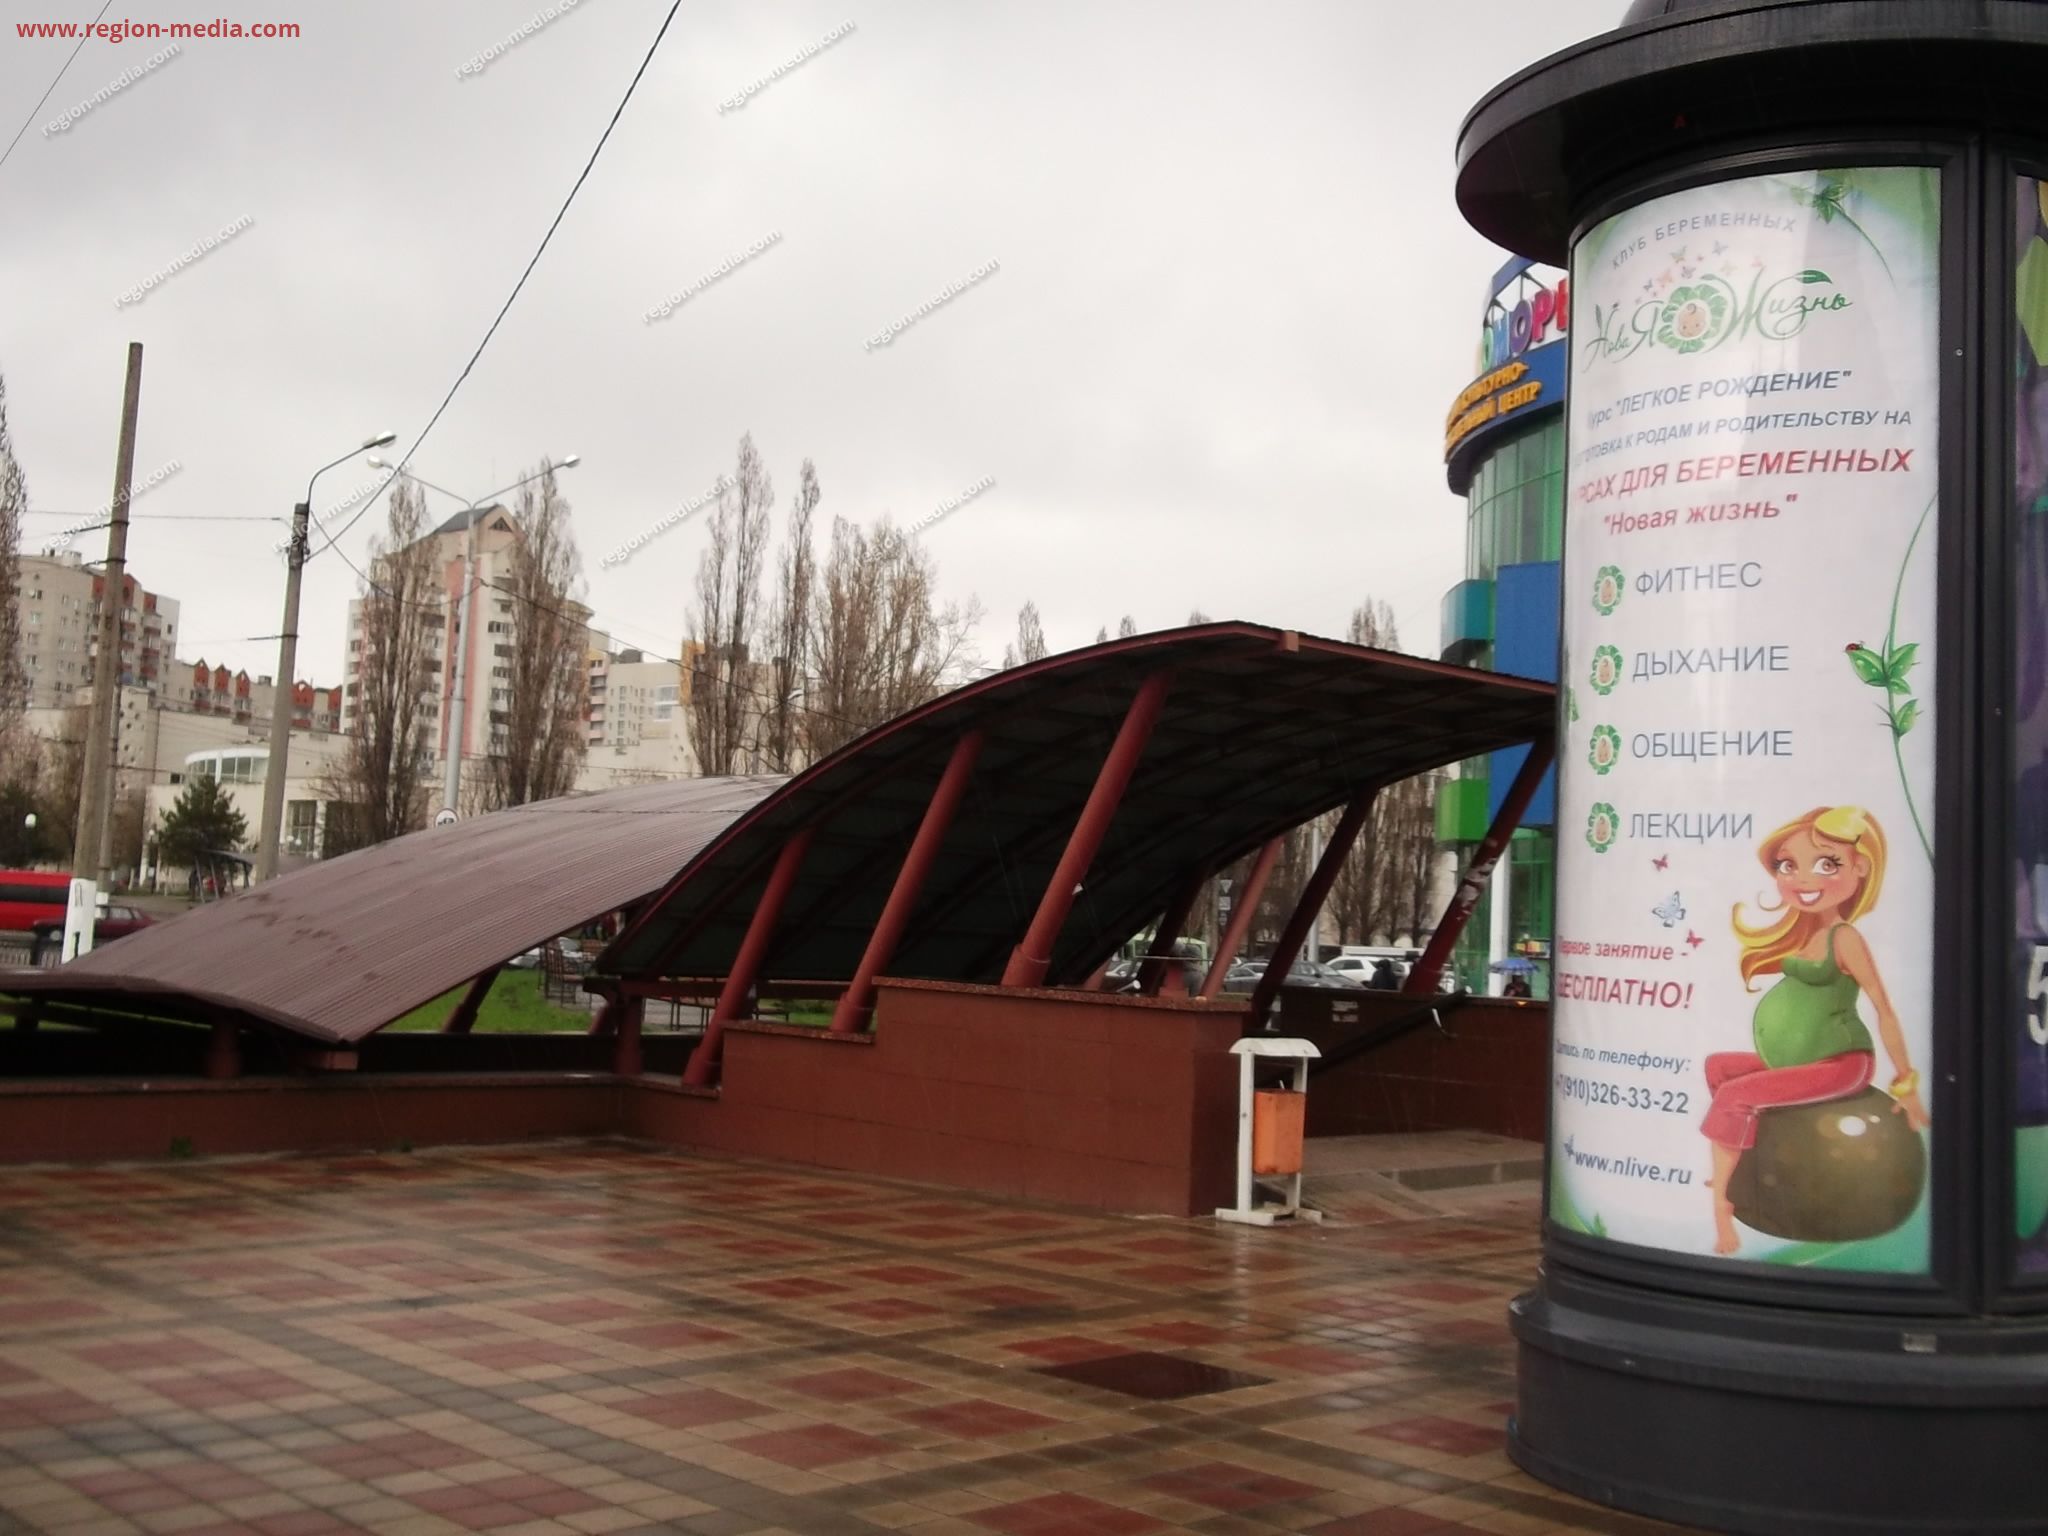 Размещение рекламы компании "Новая жизнь" на пилларсах в г.Белгород